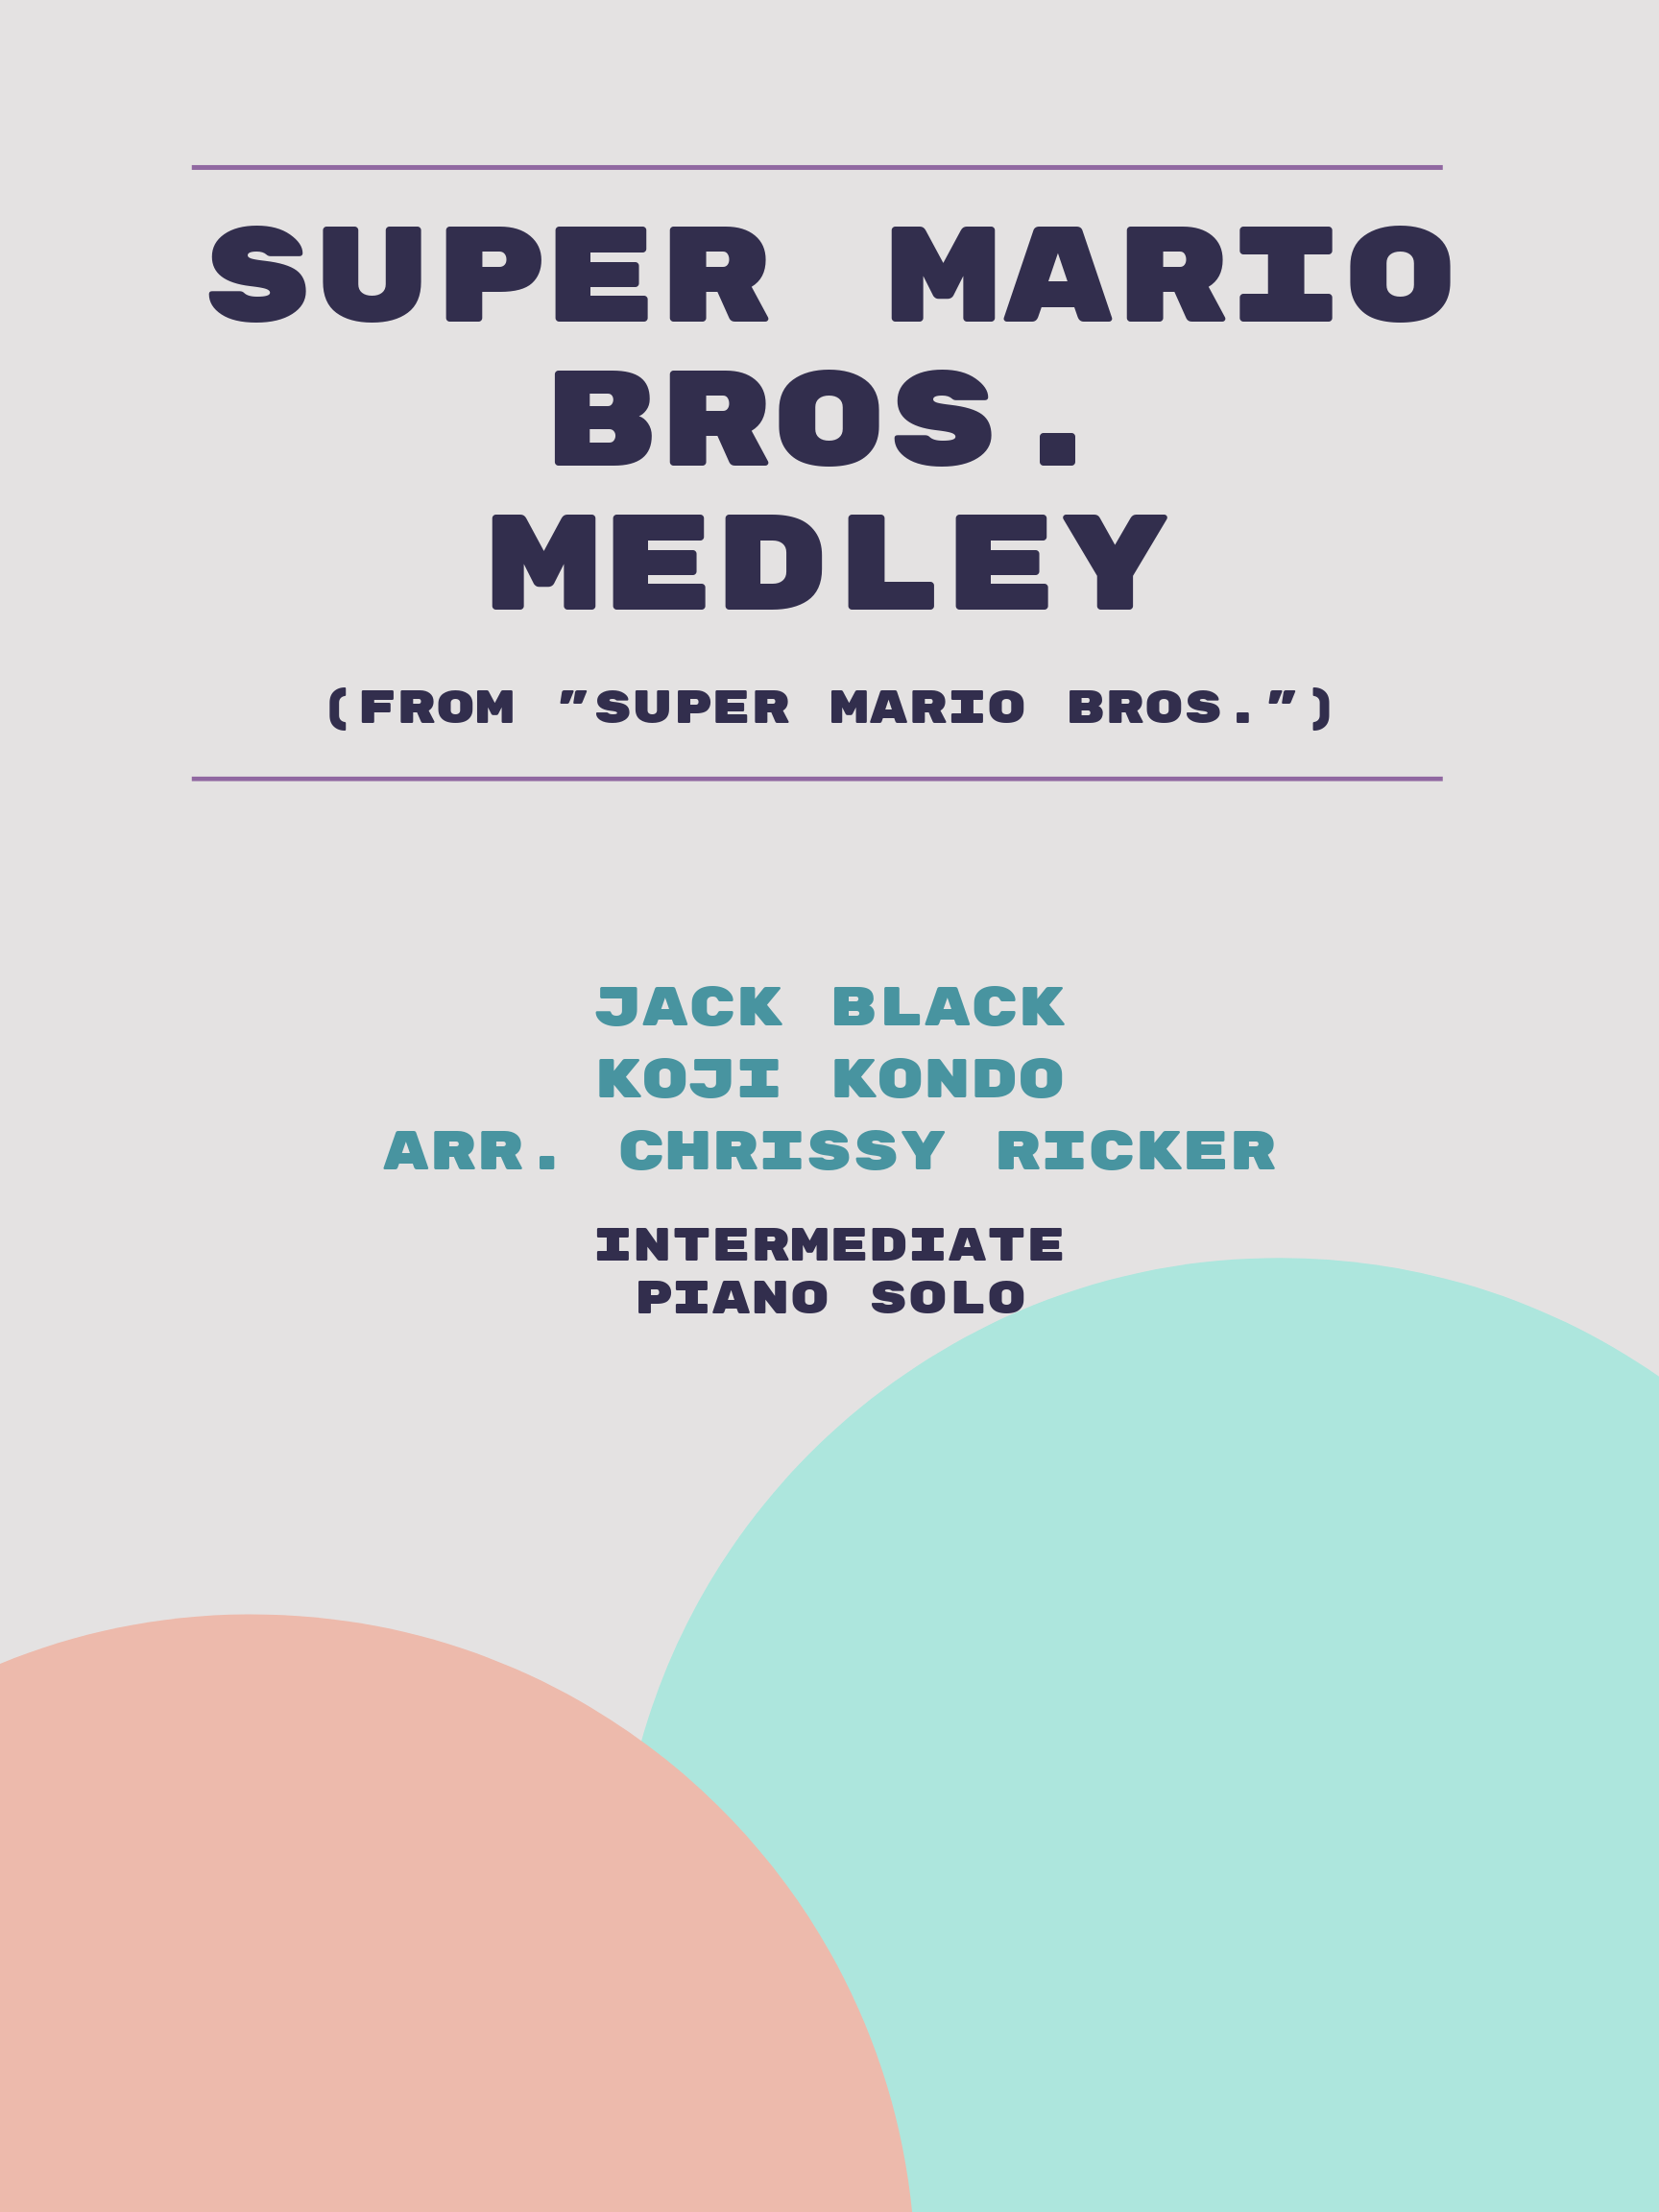 Super Mario Bros. Medley by Jack Black, Koji Kondo